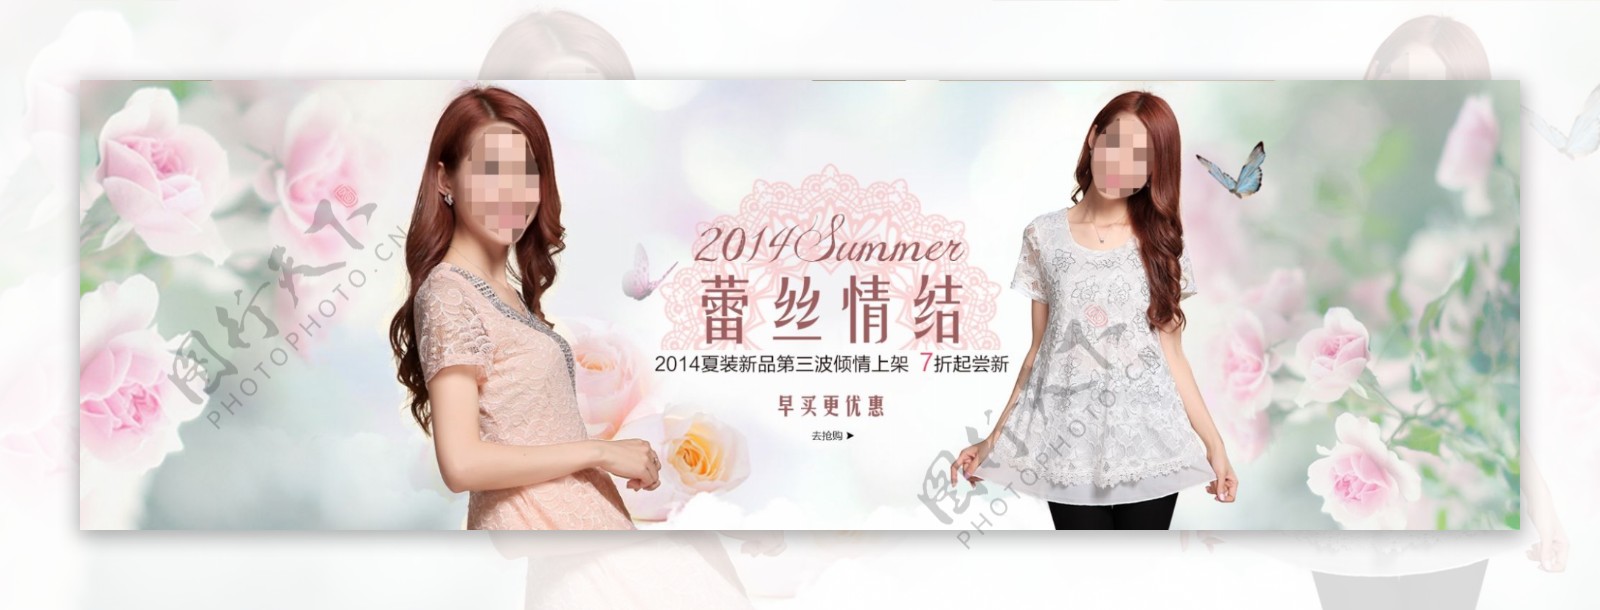 2014新品女装海报蕾丝连衣裙海报